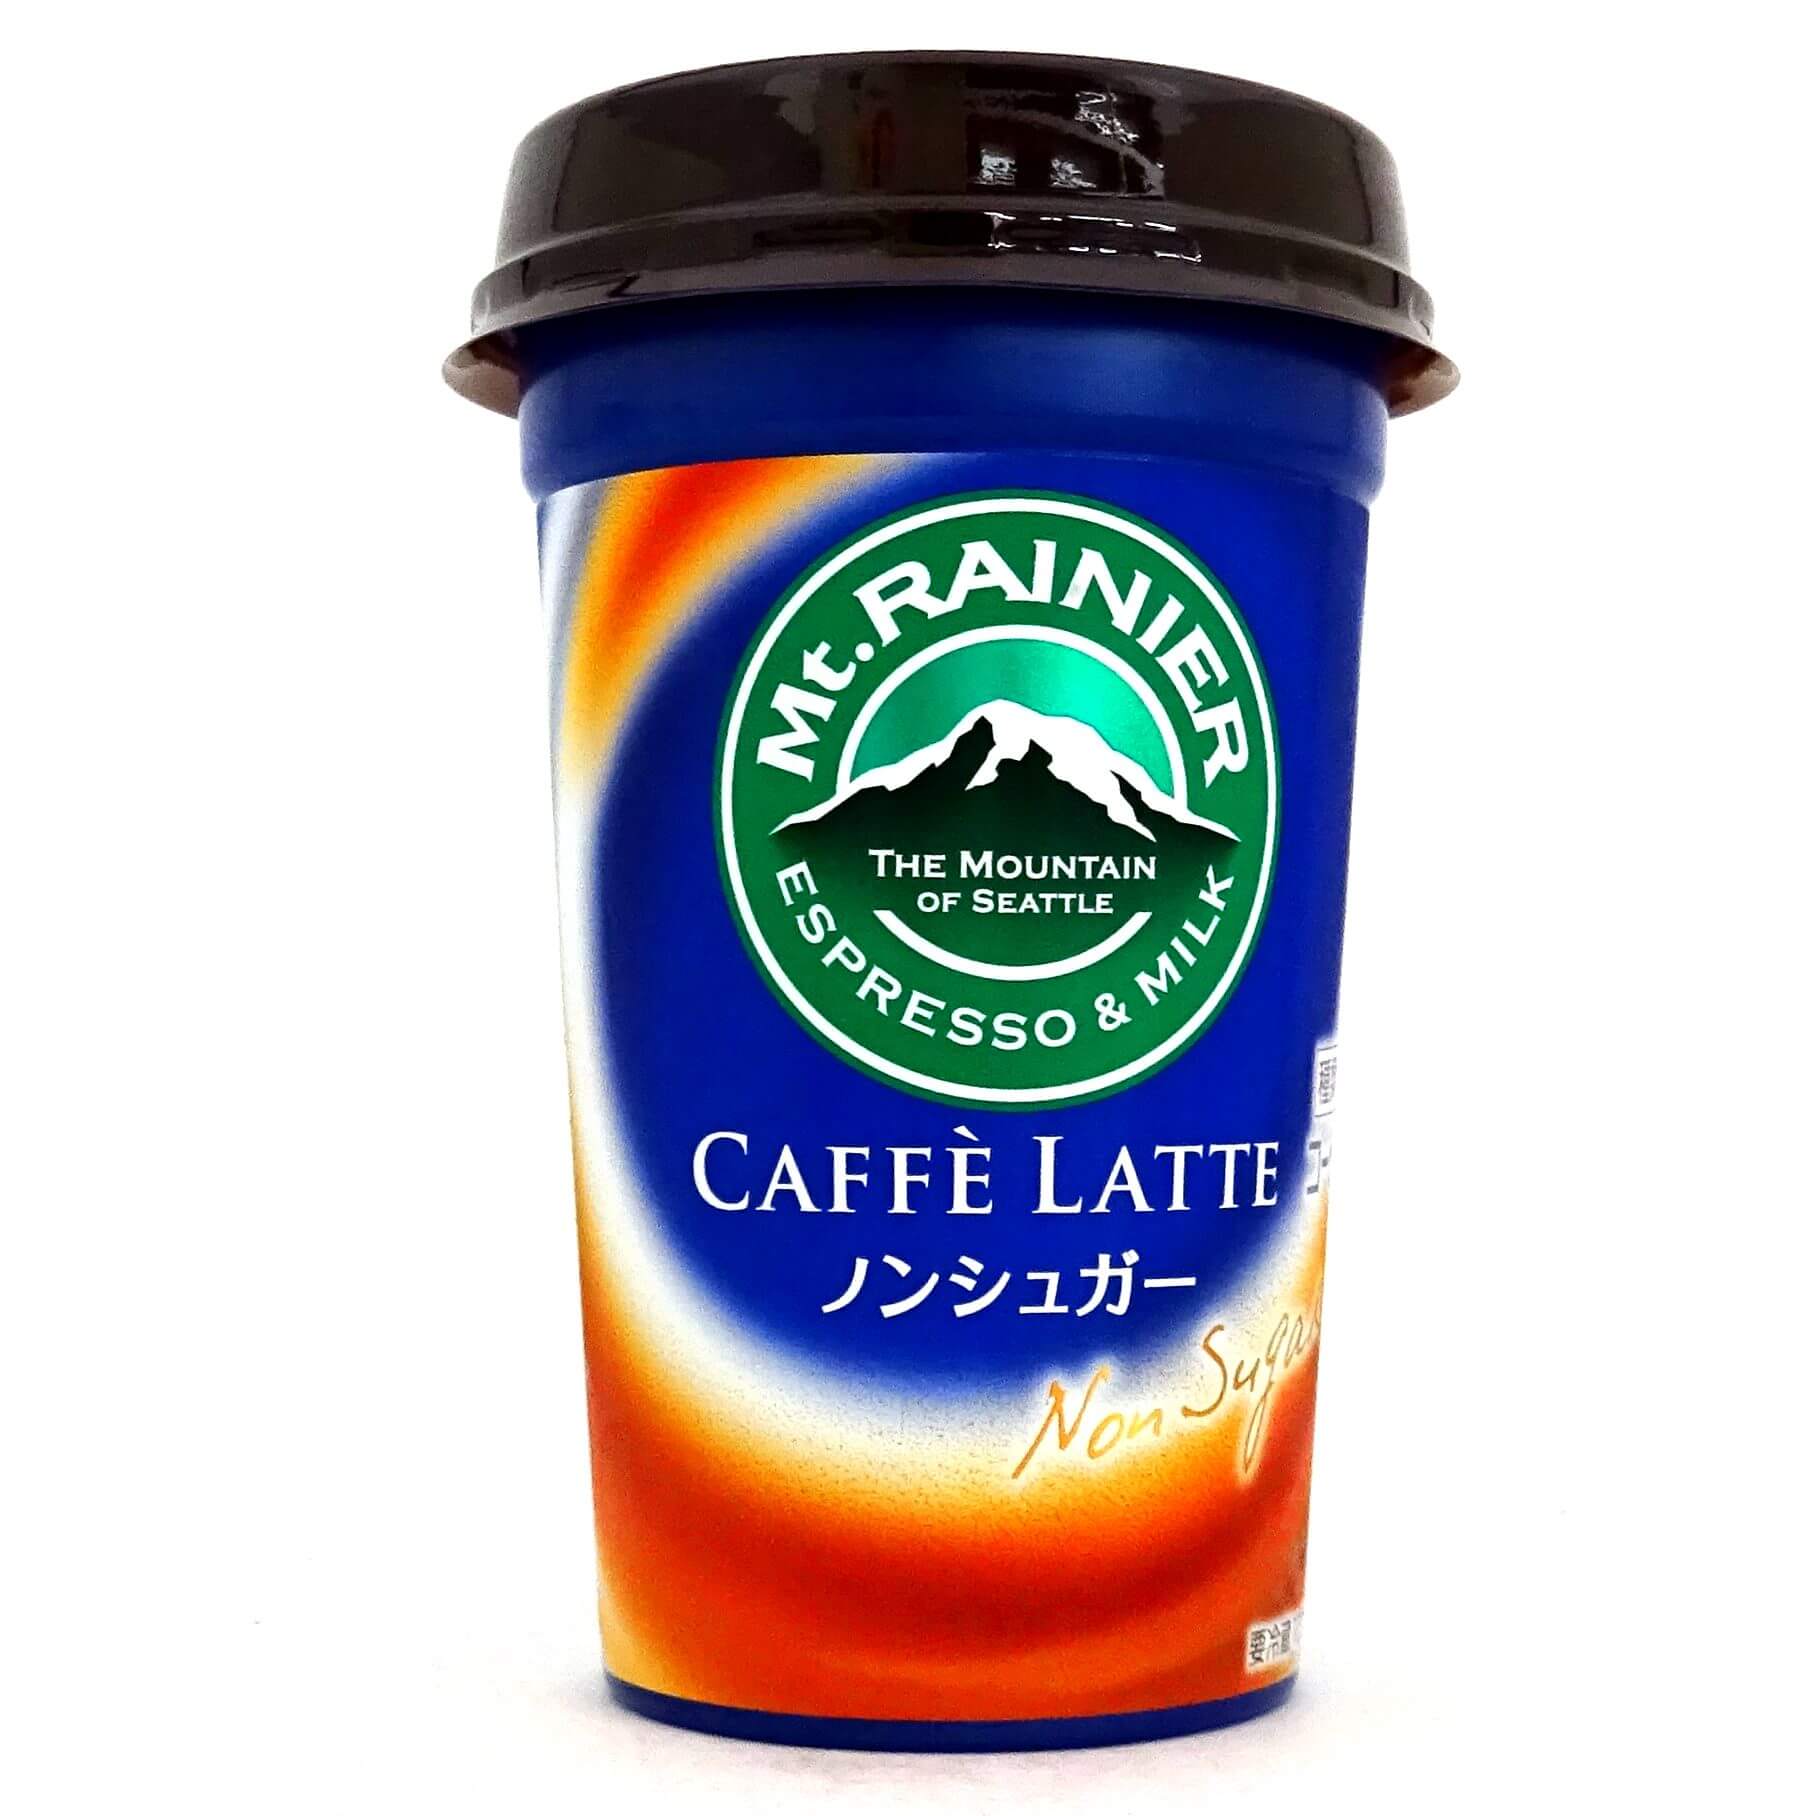 Mt.Rainier Cafe Latte Non Sugar